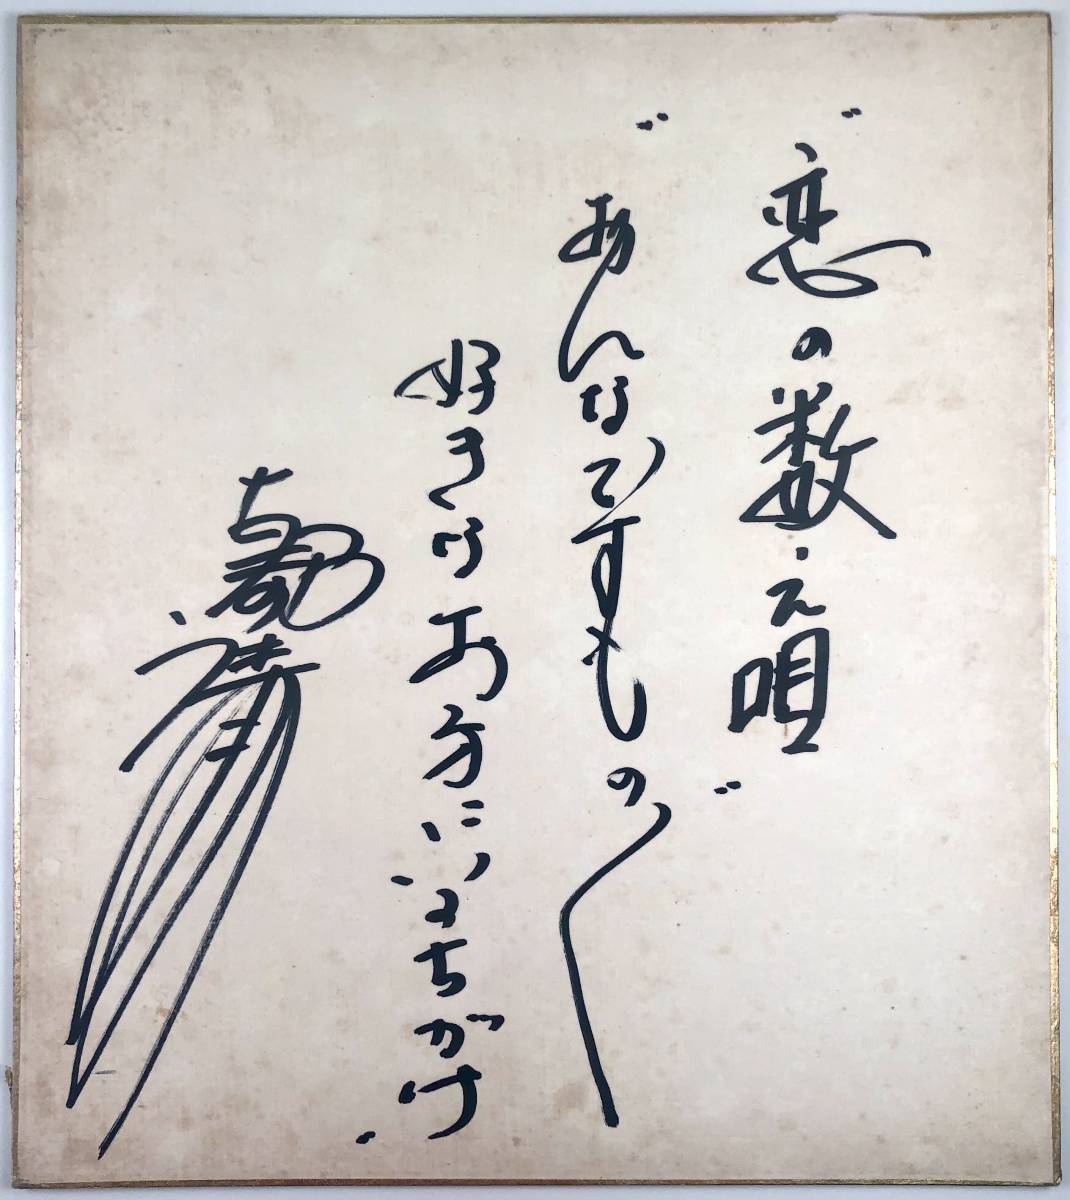 कोटो कियोनो हस्ताक्षरित रंगीन कागज (कोटो कियोनो/एनका सिंगर/1966/रेट्रो/जंक), संगीत, यादगार, स्मृति चिन्ह, संकेत